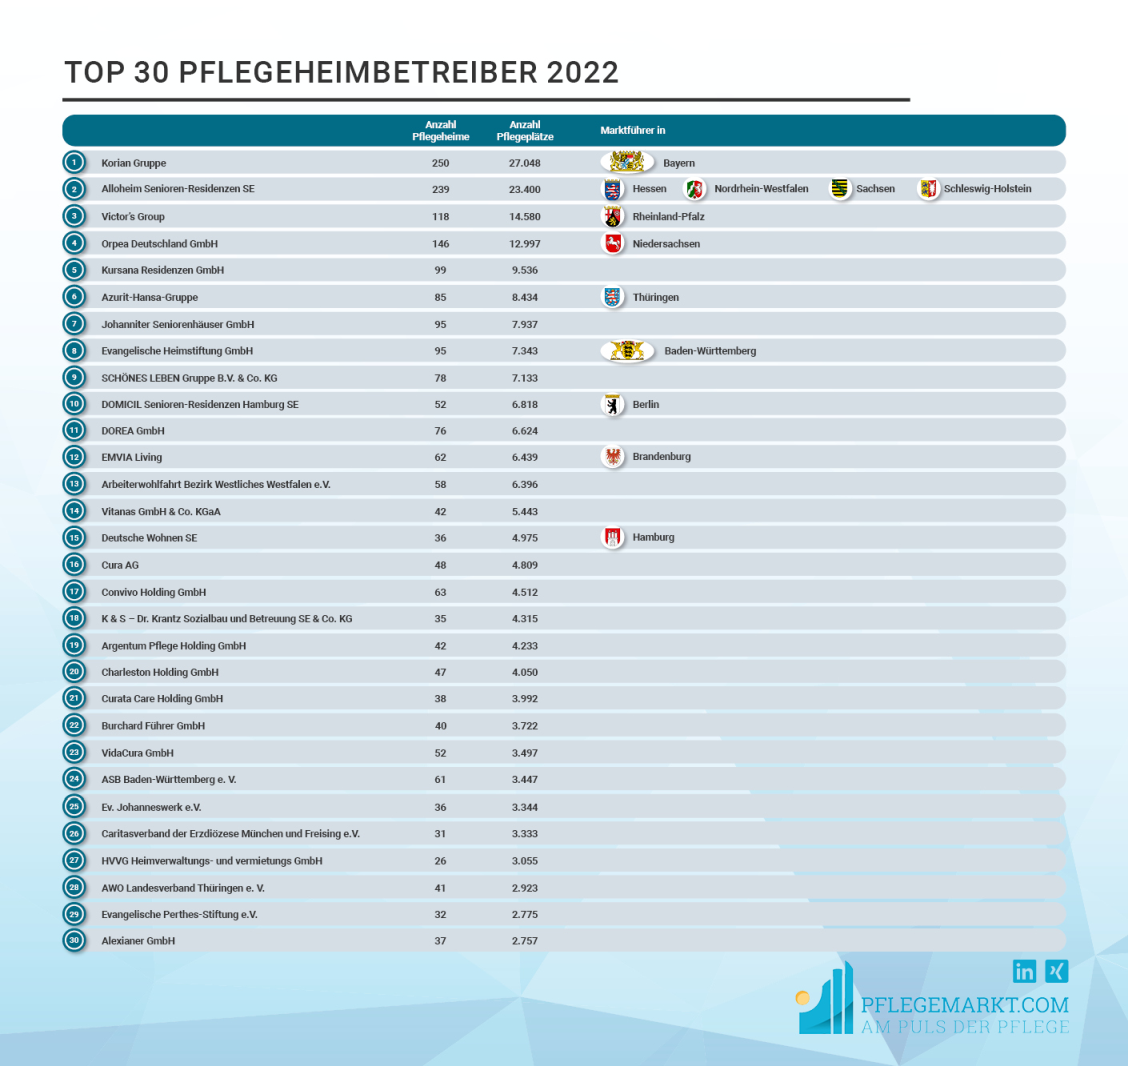 Liste der Top 30 Pflegeheimbetreiber mit Informationen über Marktführerschaft in den Bundesländern